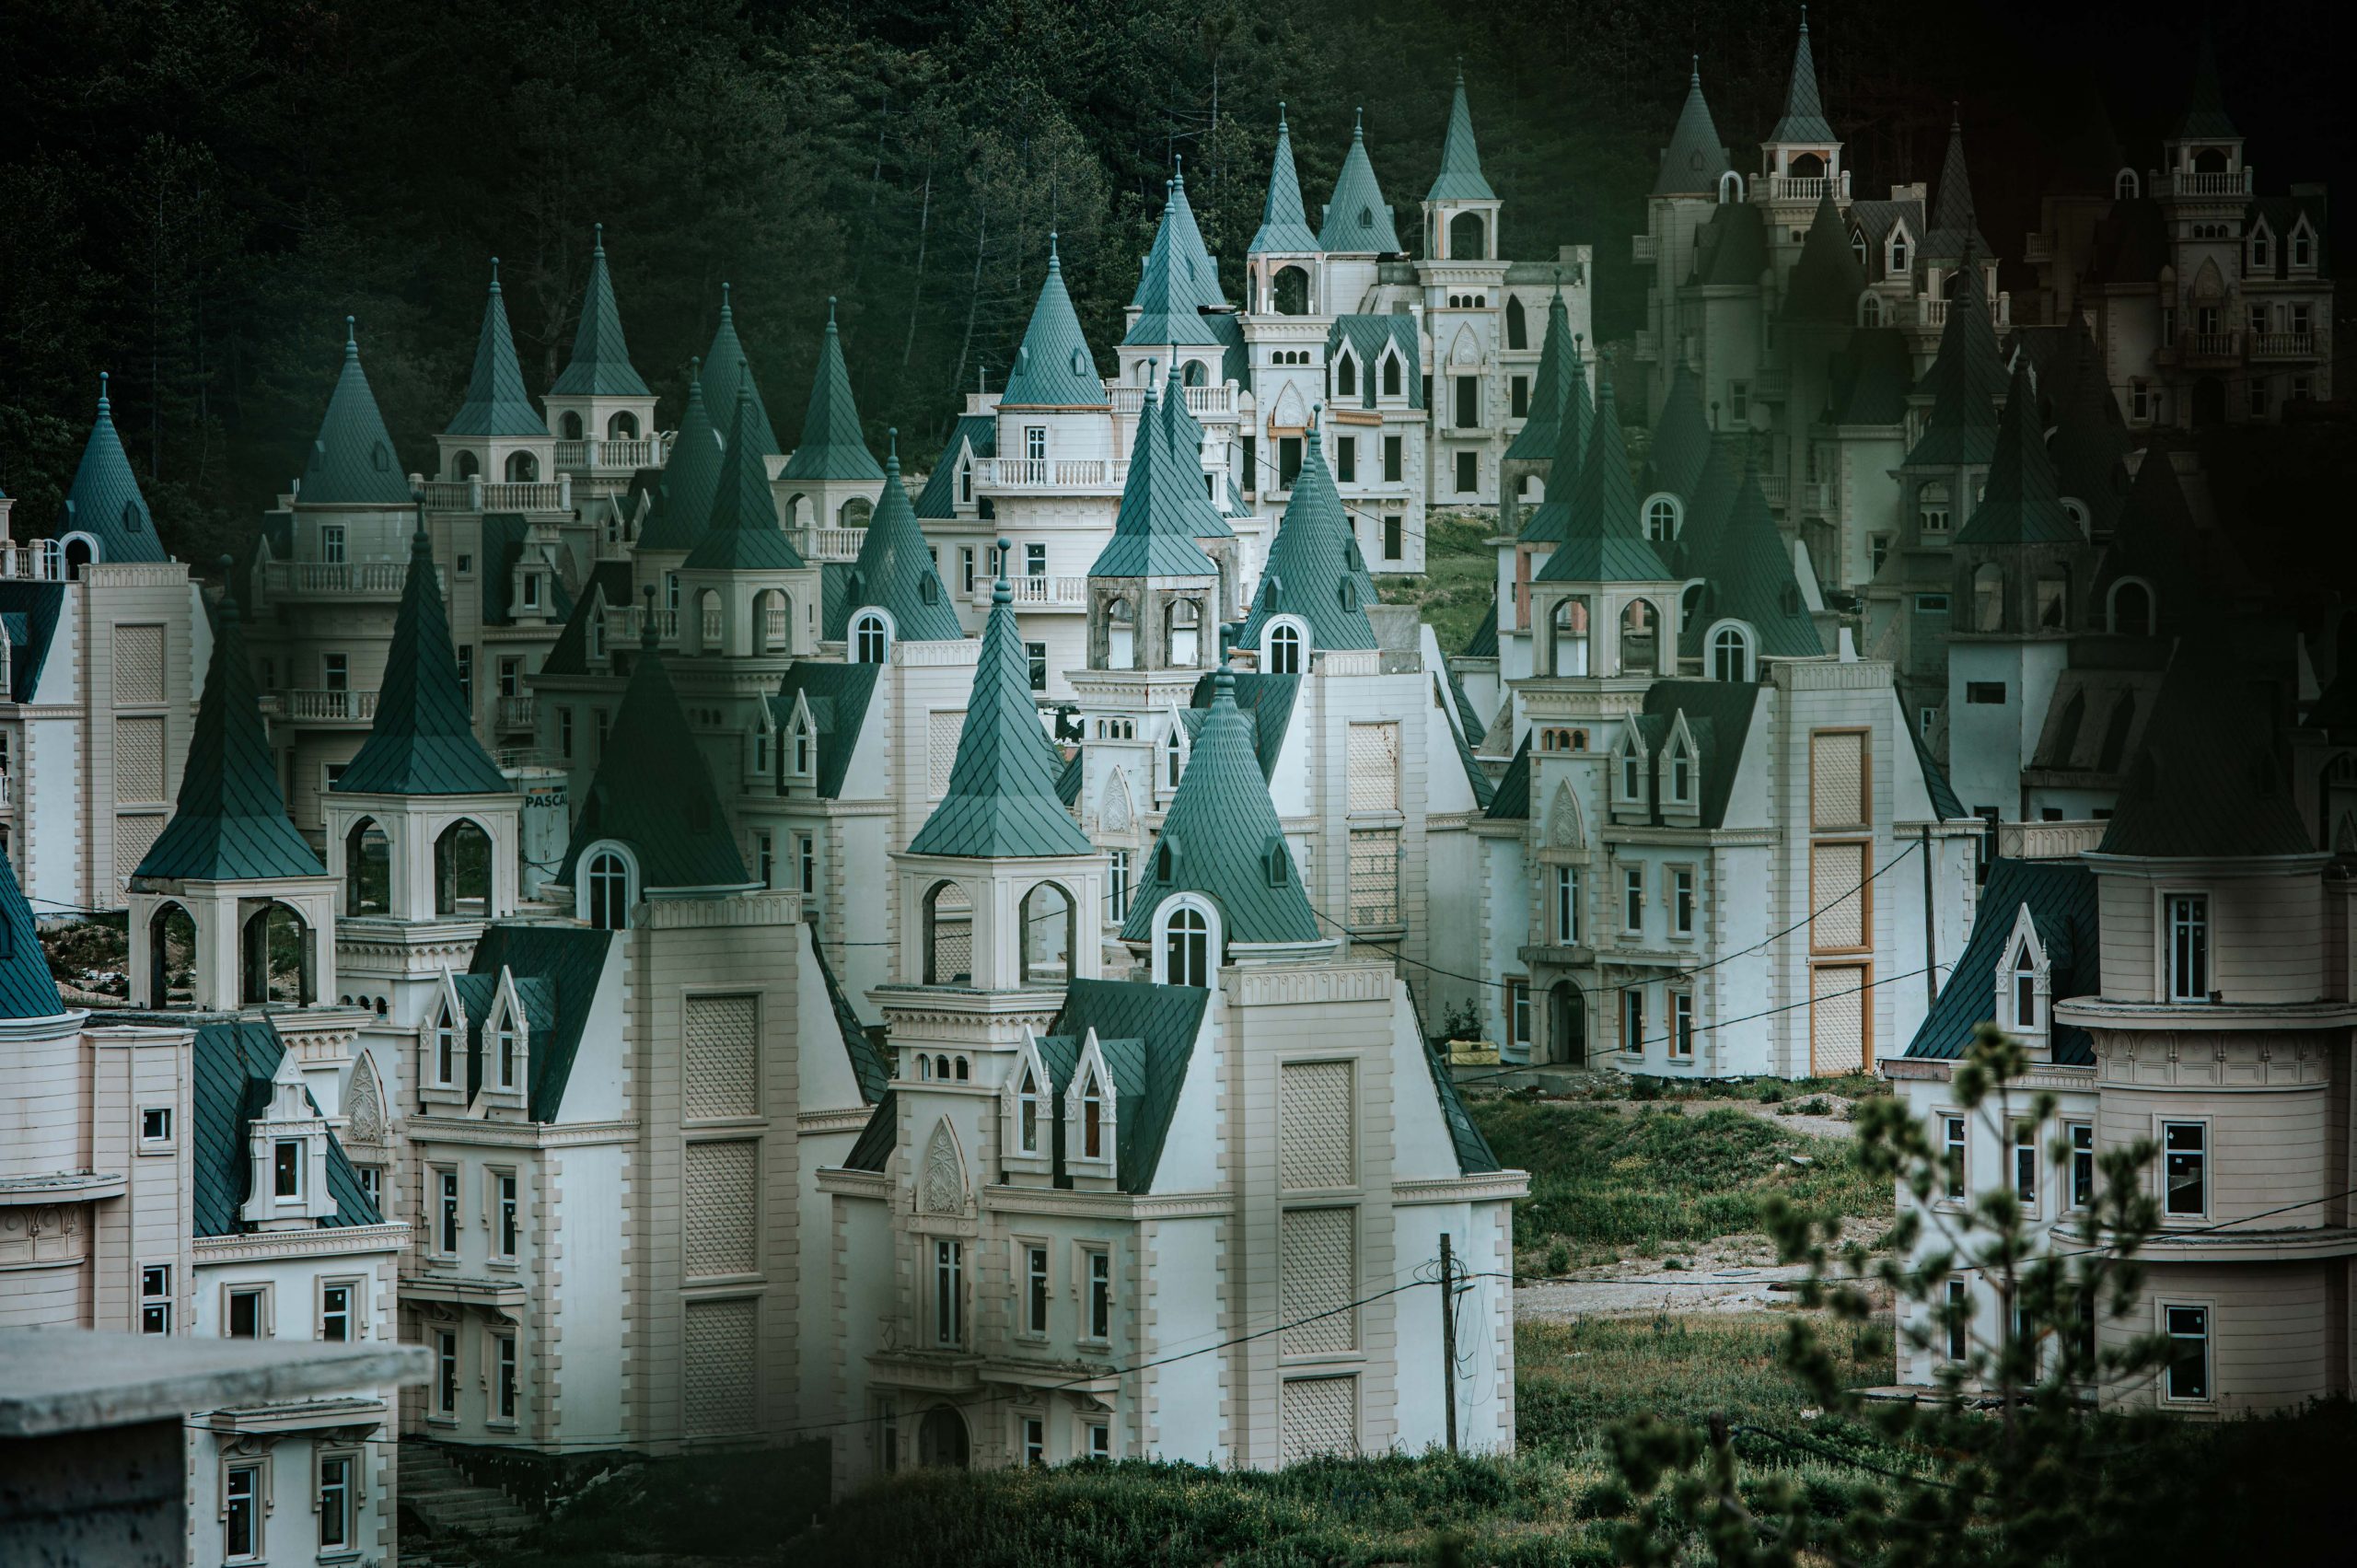 Fairytale Castles & the Salt Lake